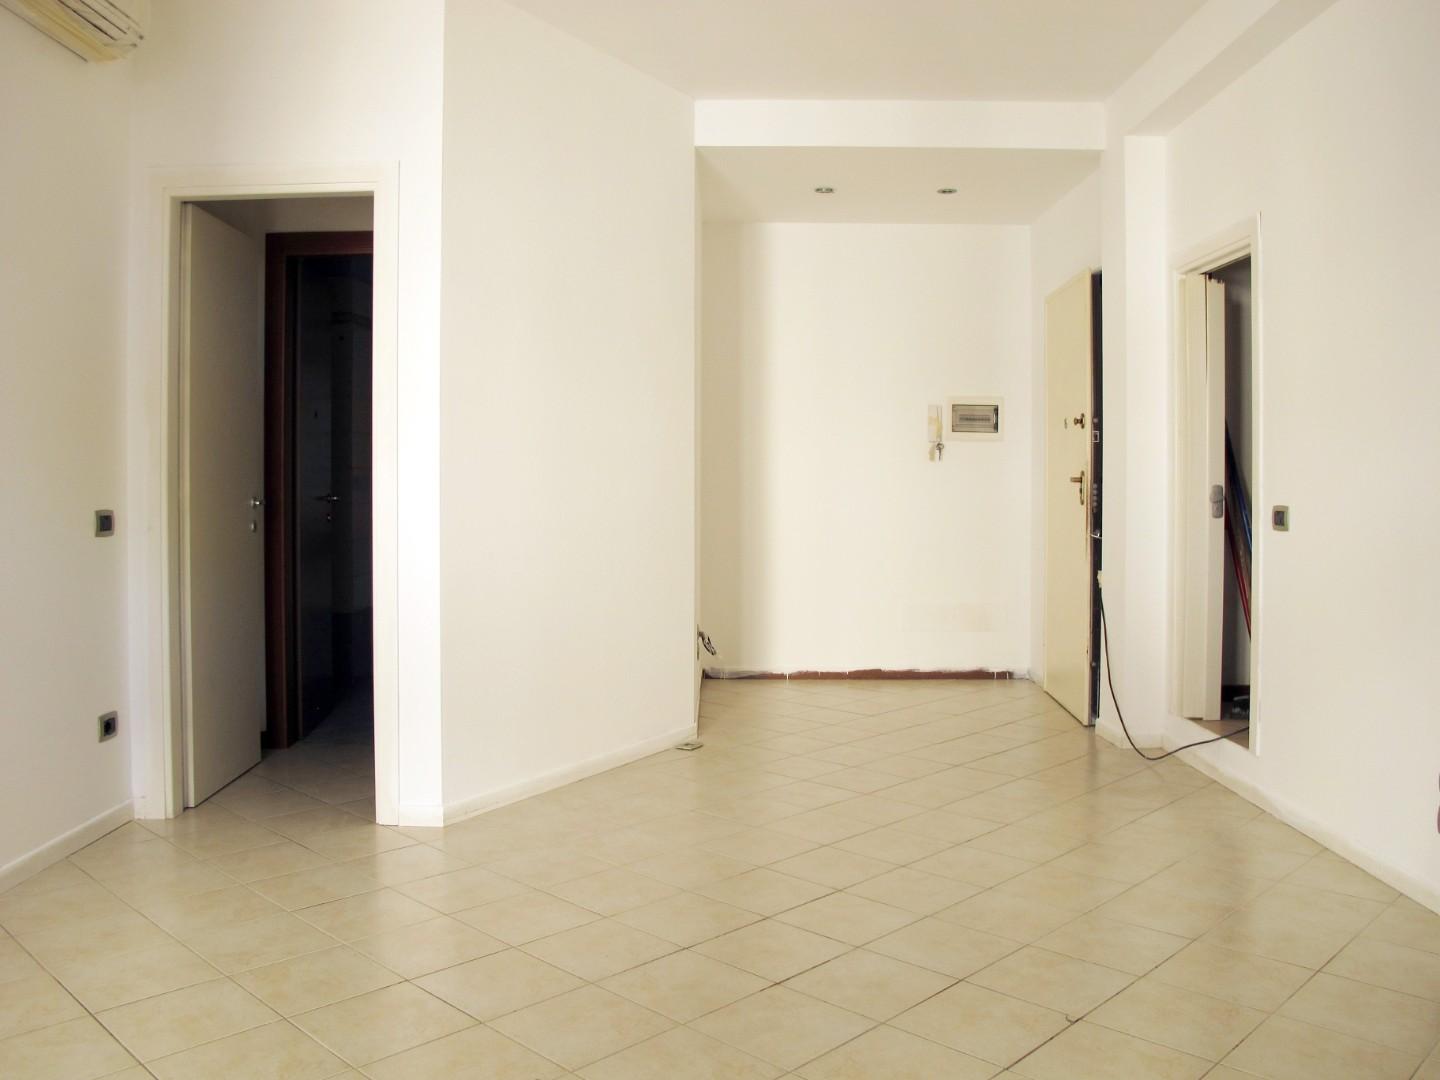 Appartamento in vendita a Castelfiorentino, 3 locali, prezzo € 99.000 | PortaleAgenzieImmobiliari.it